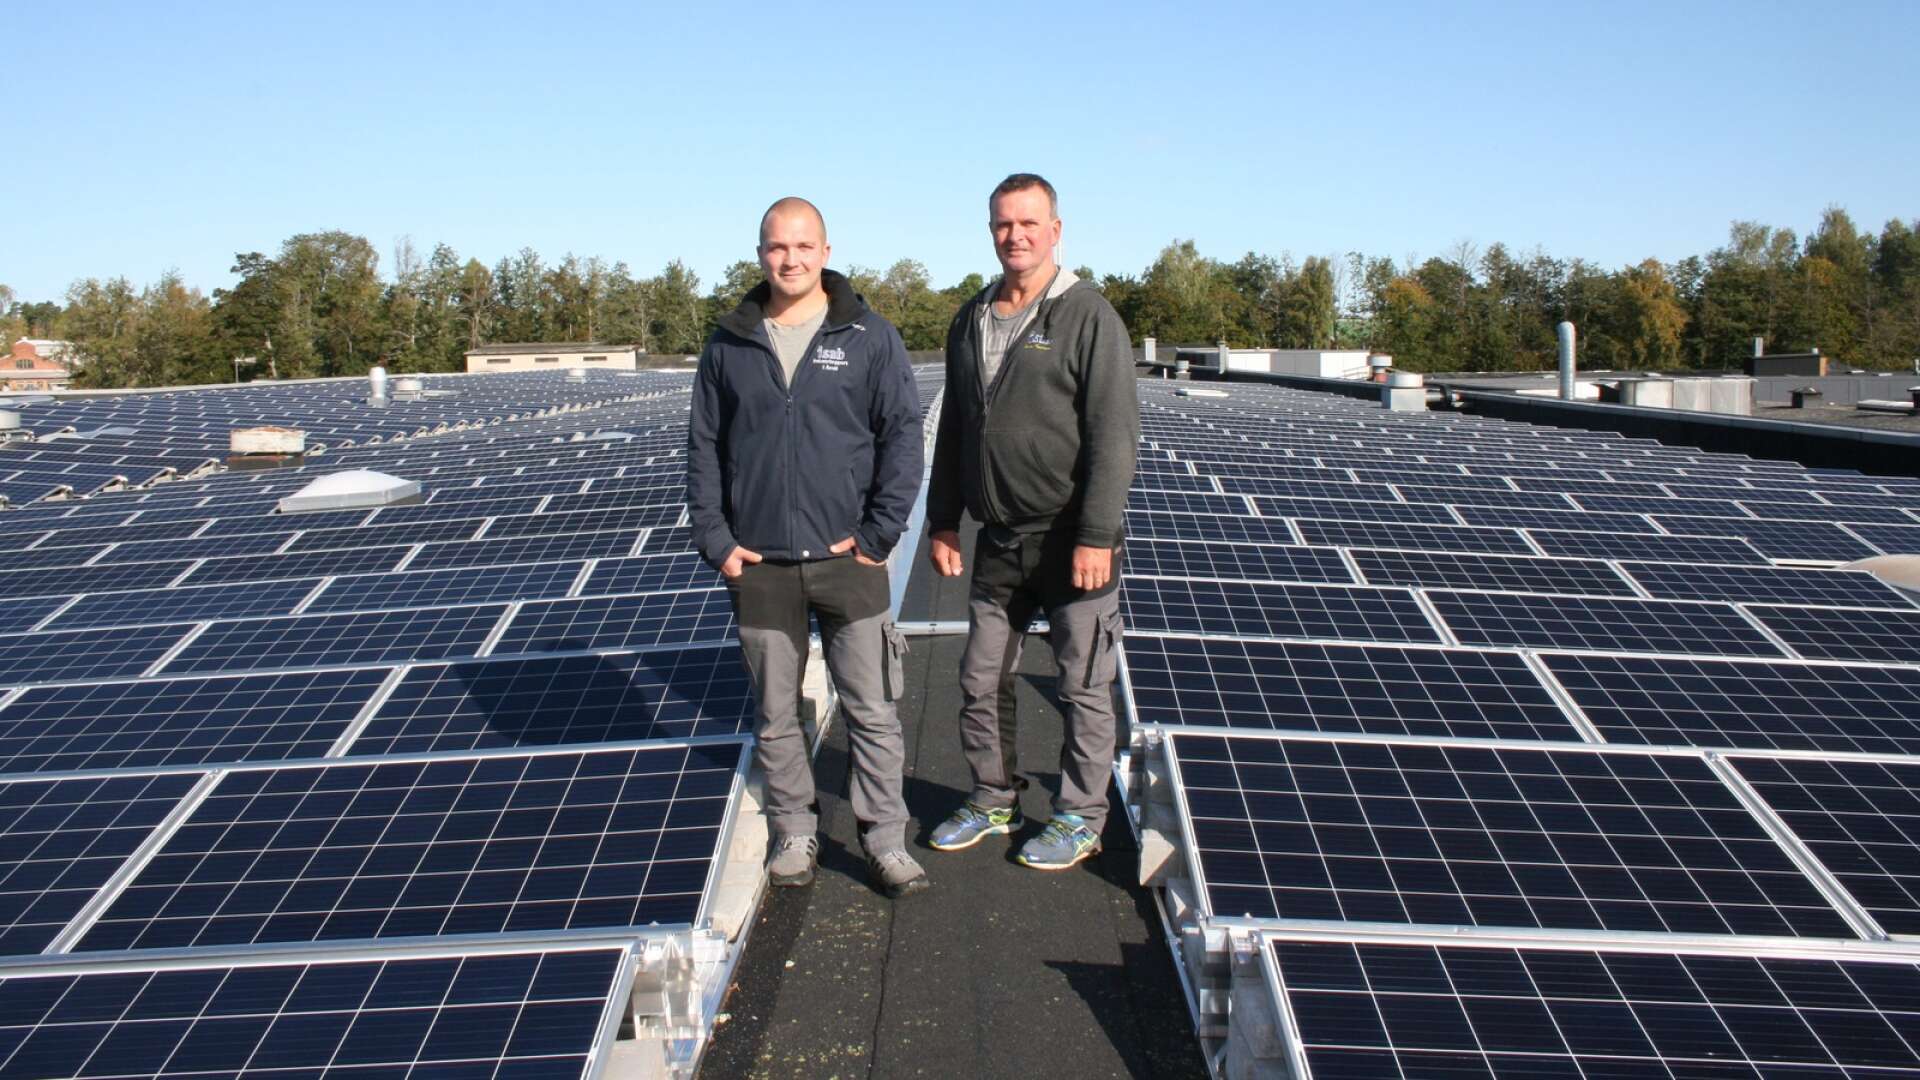 Jimmie Karlsson och Janne Karlsson som driver Industrisupport i Åmål investerade häromåret i 5000 kvadratmeter solpanel. Nu kompletterar de panelerna med Azelios energilagringssystem.